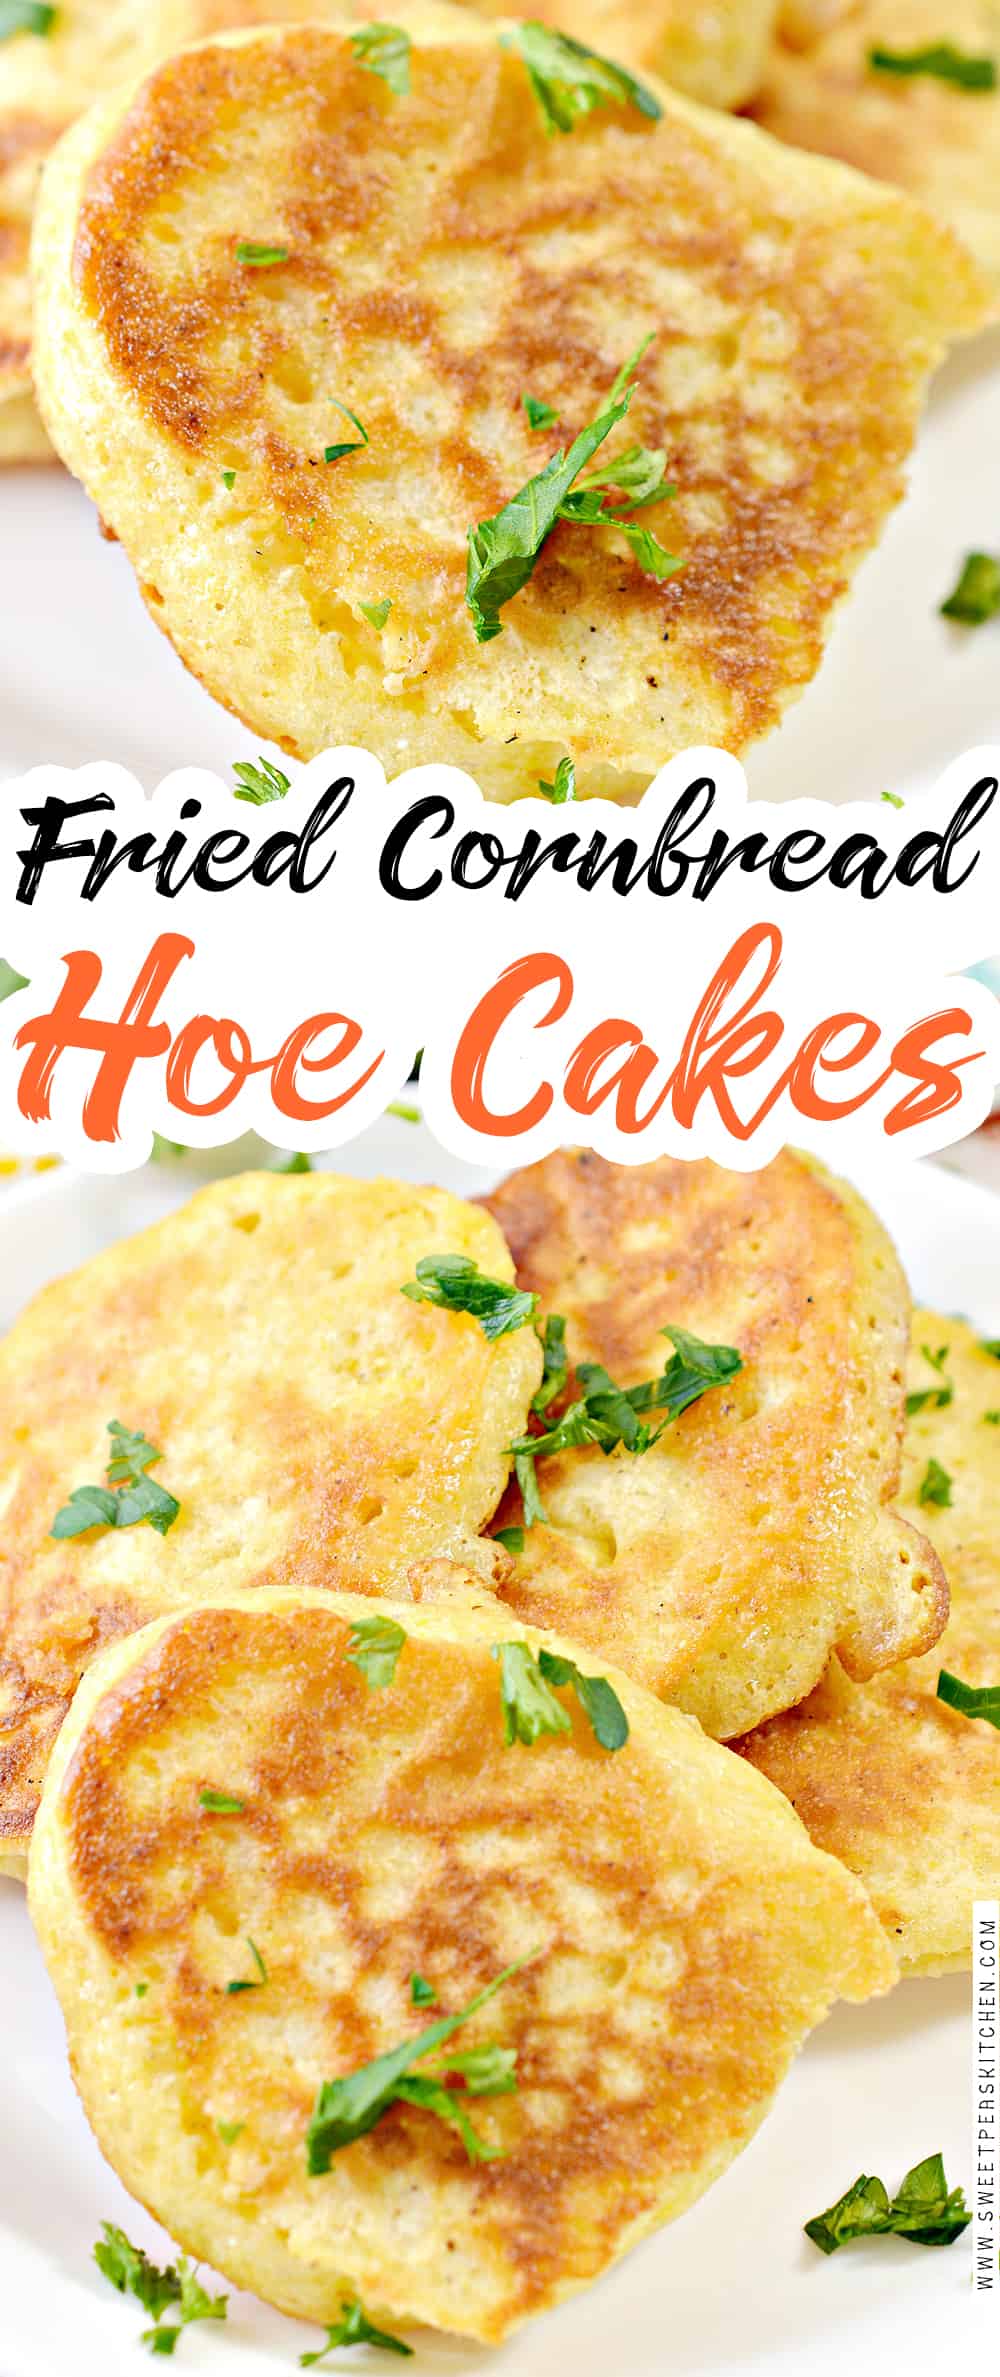 Fried Cornbread Hoe Cakes